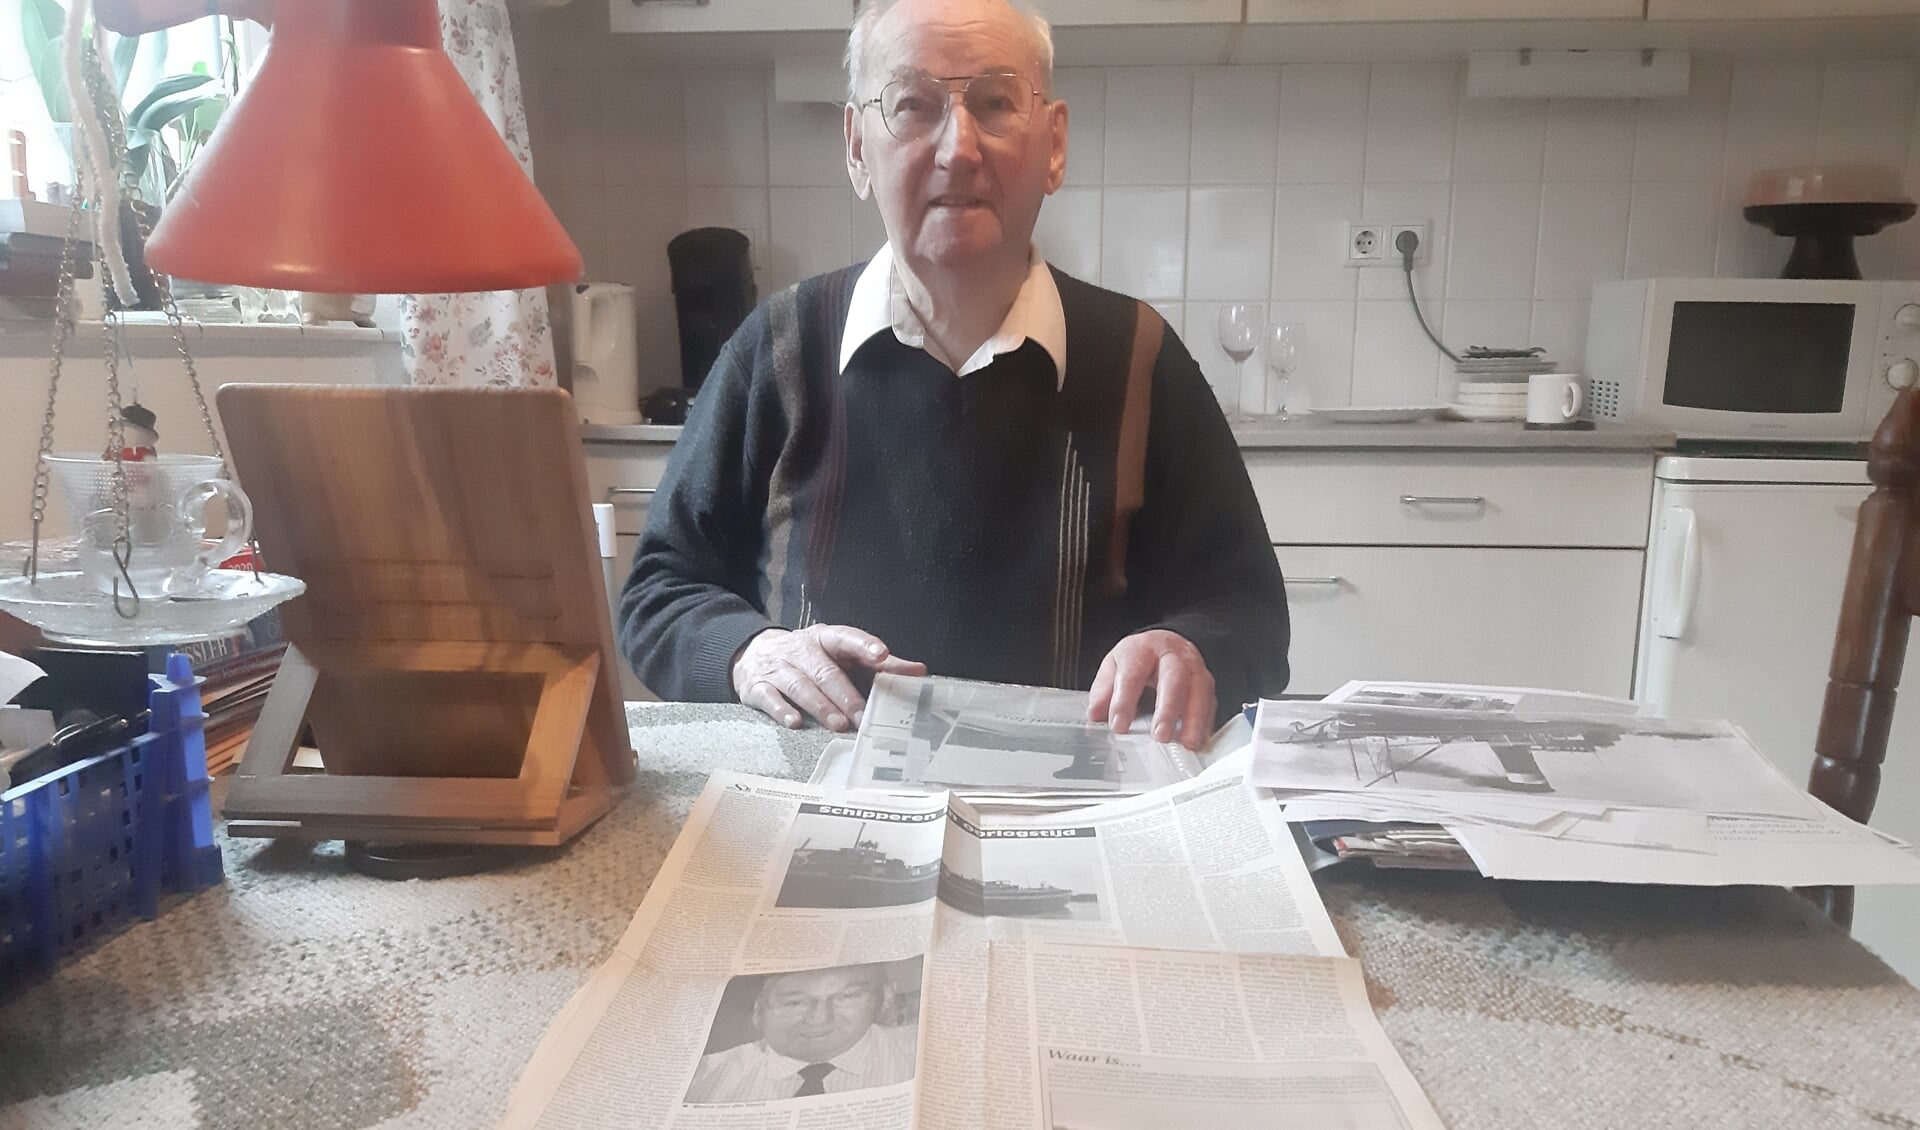 Meine van der Vaart toont een paginagroot artikel uit de Scheepvaartkant waarin hij over zijn oorlogstijd vertelt. Foto: Rudi Hofman 